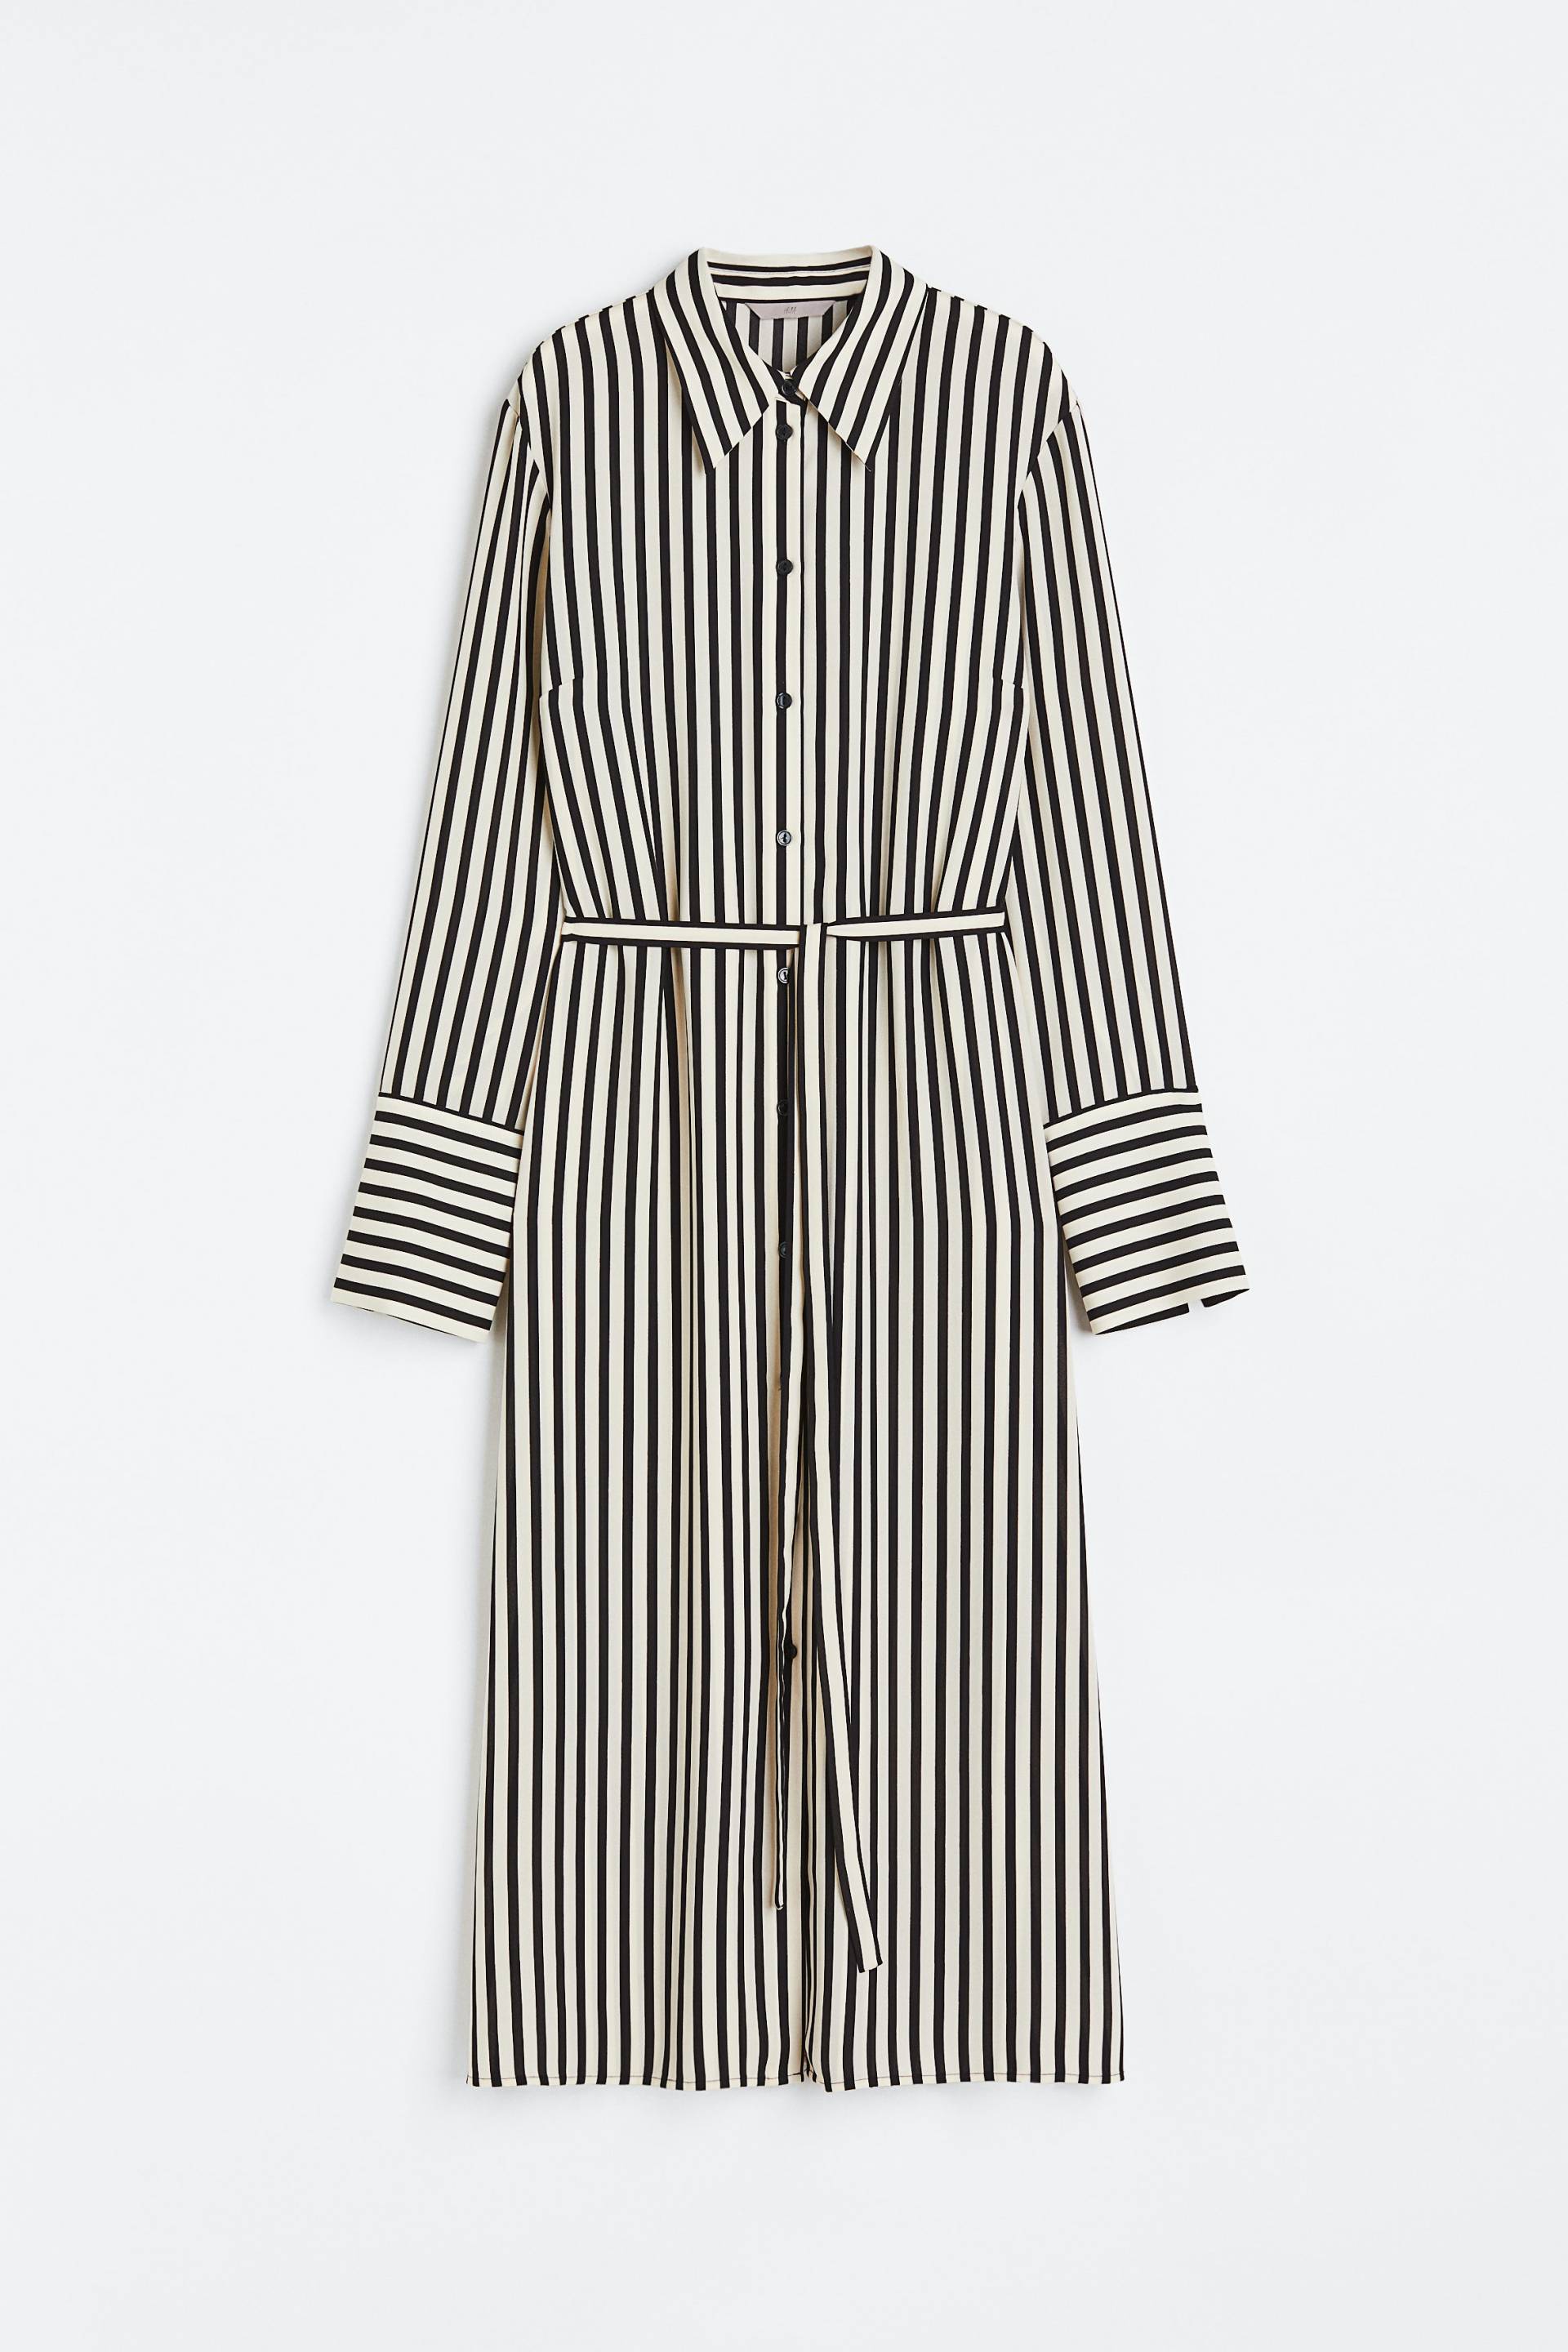 H&M Blusenkleid mit Bindegürtel Hellbeige/Gestreift, Alltagskleider in Größe XS. Farbe: Light beige/striped von H&M